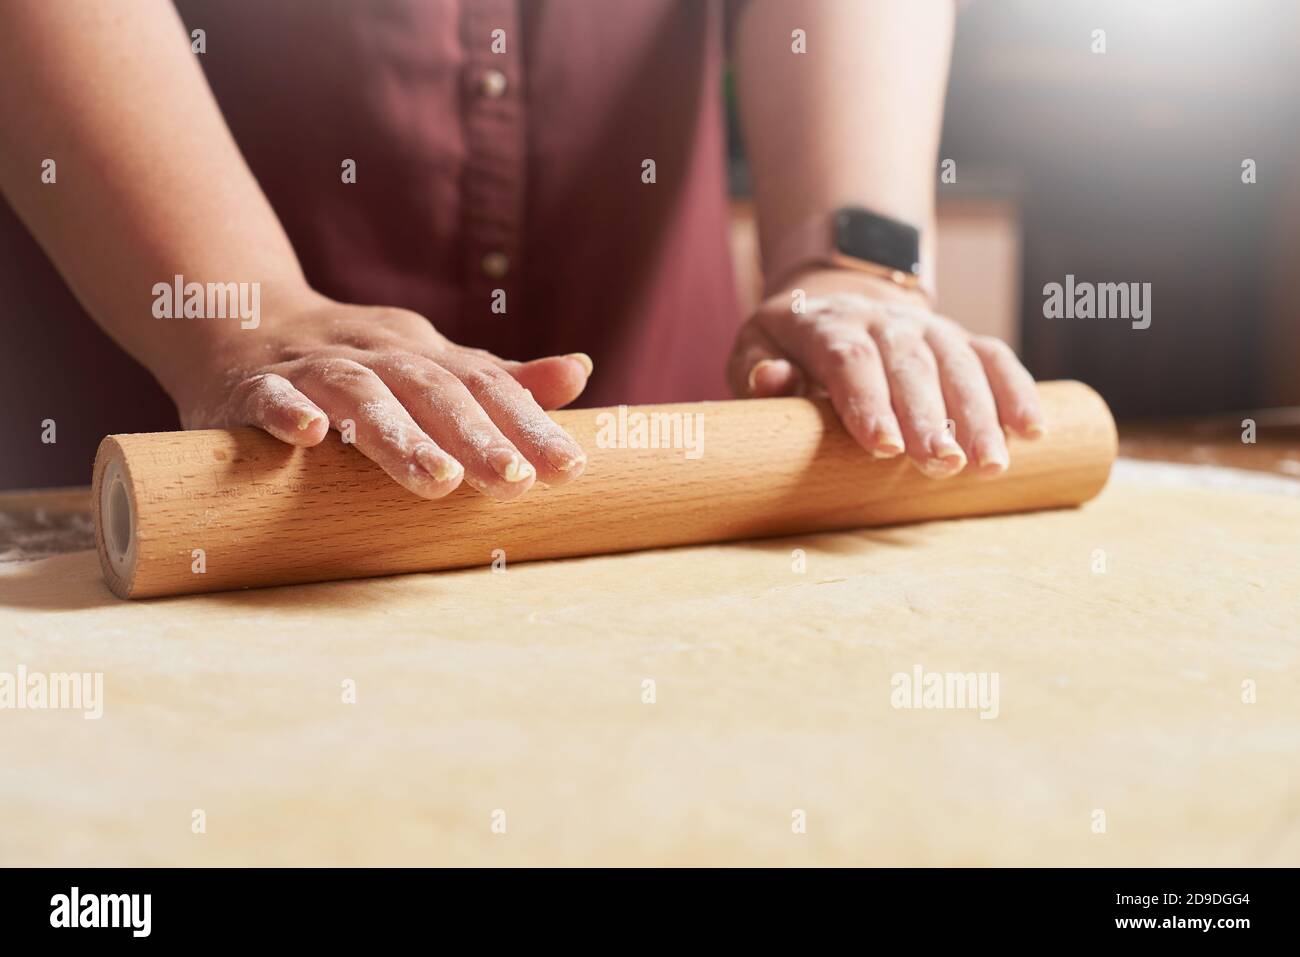 Les mains des femmes roulent la pâte crue avec un rouleau broche Banque D'Images